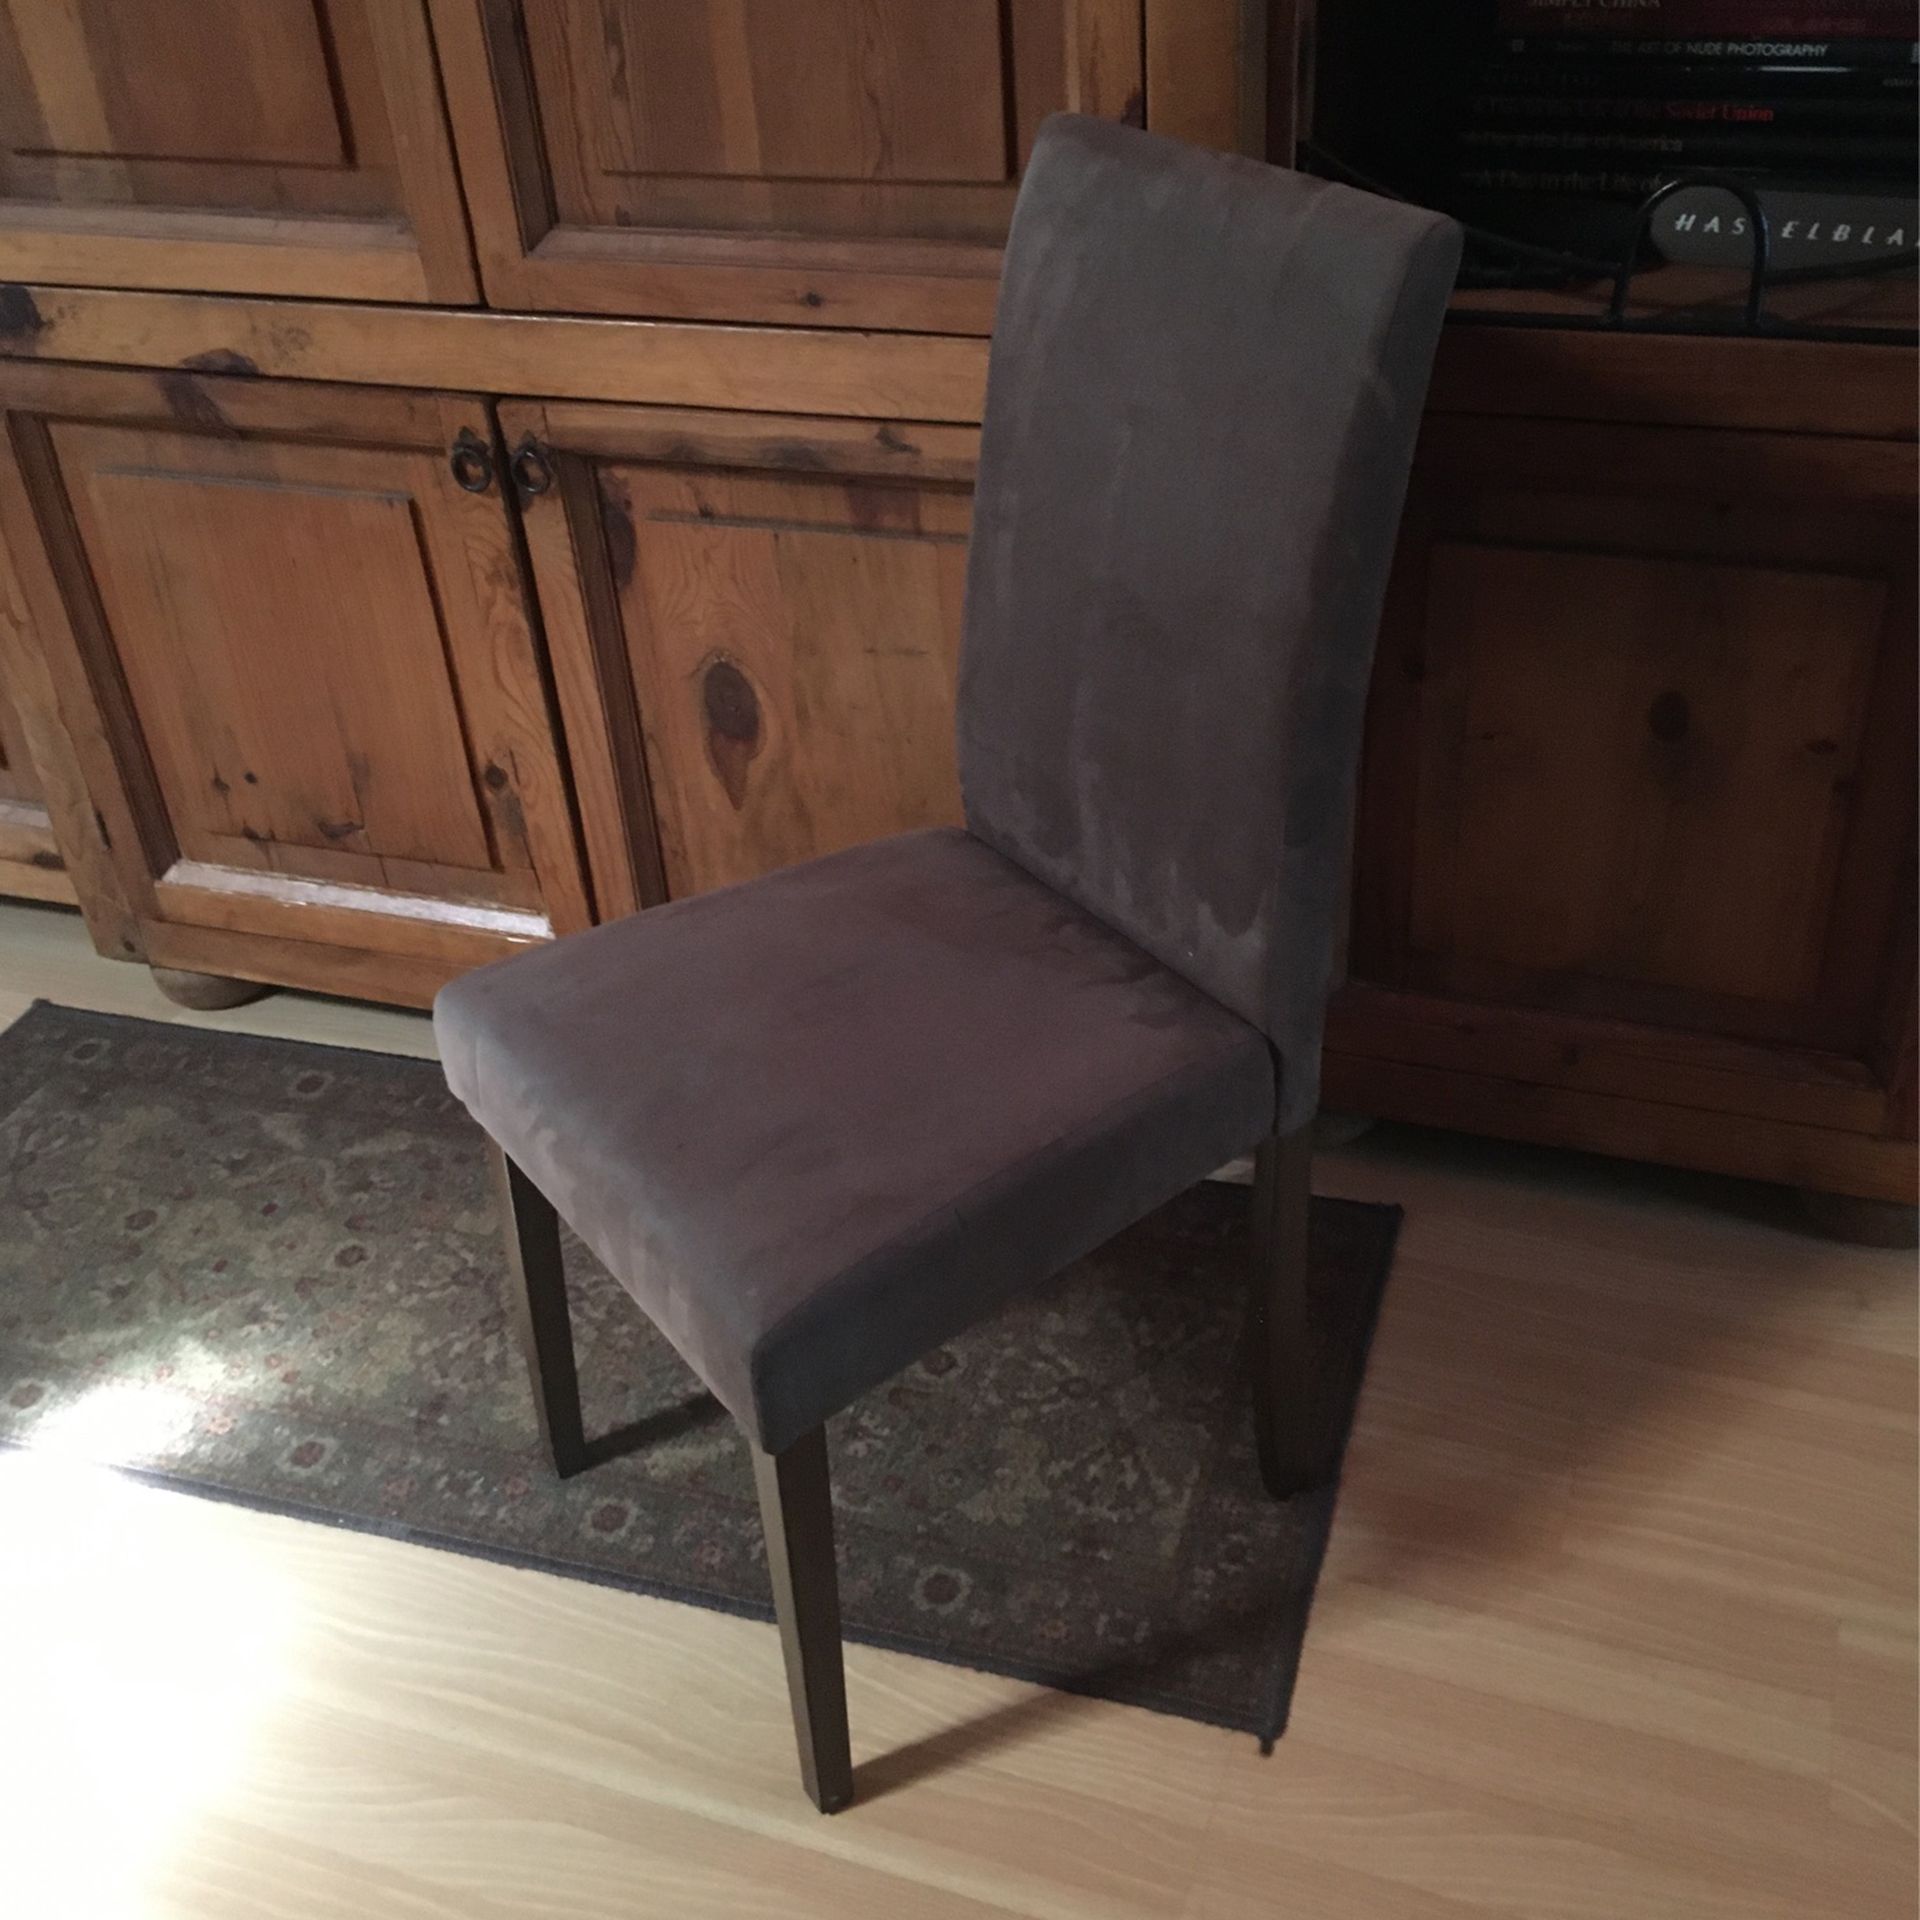 Brown Micro Fiber Chair $25.00